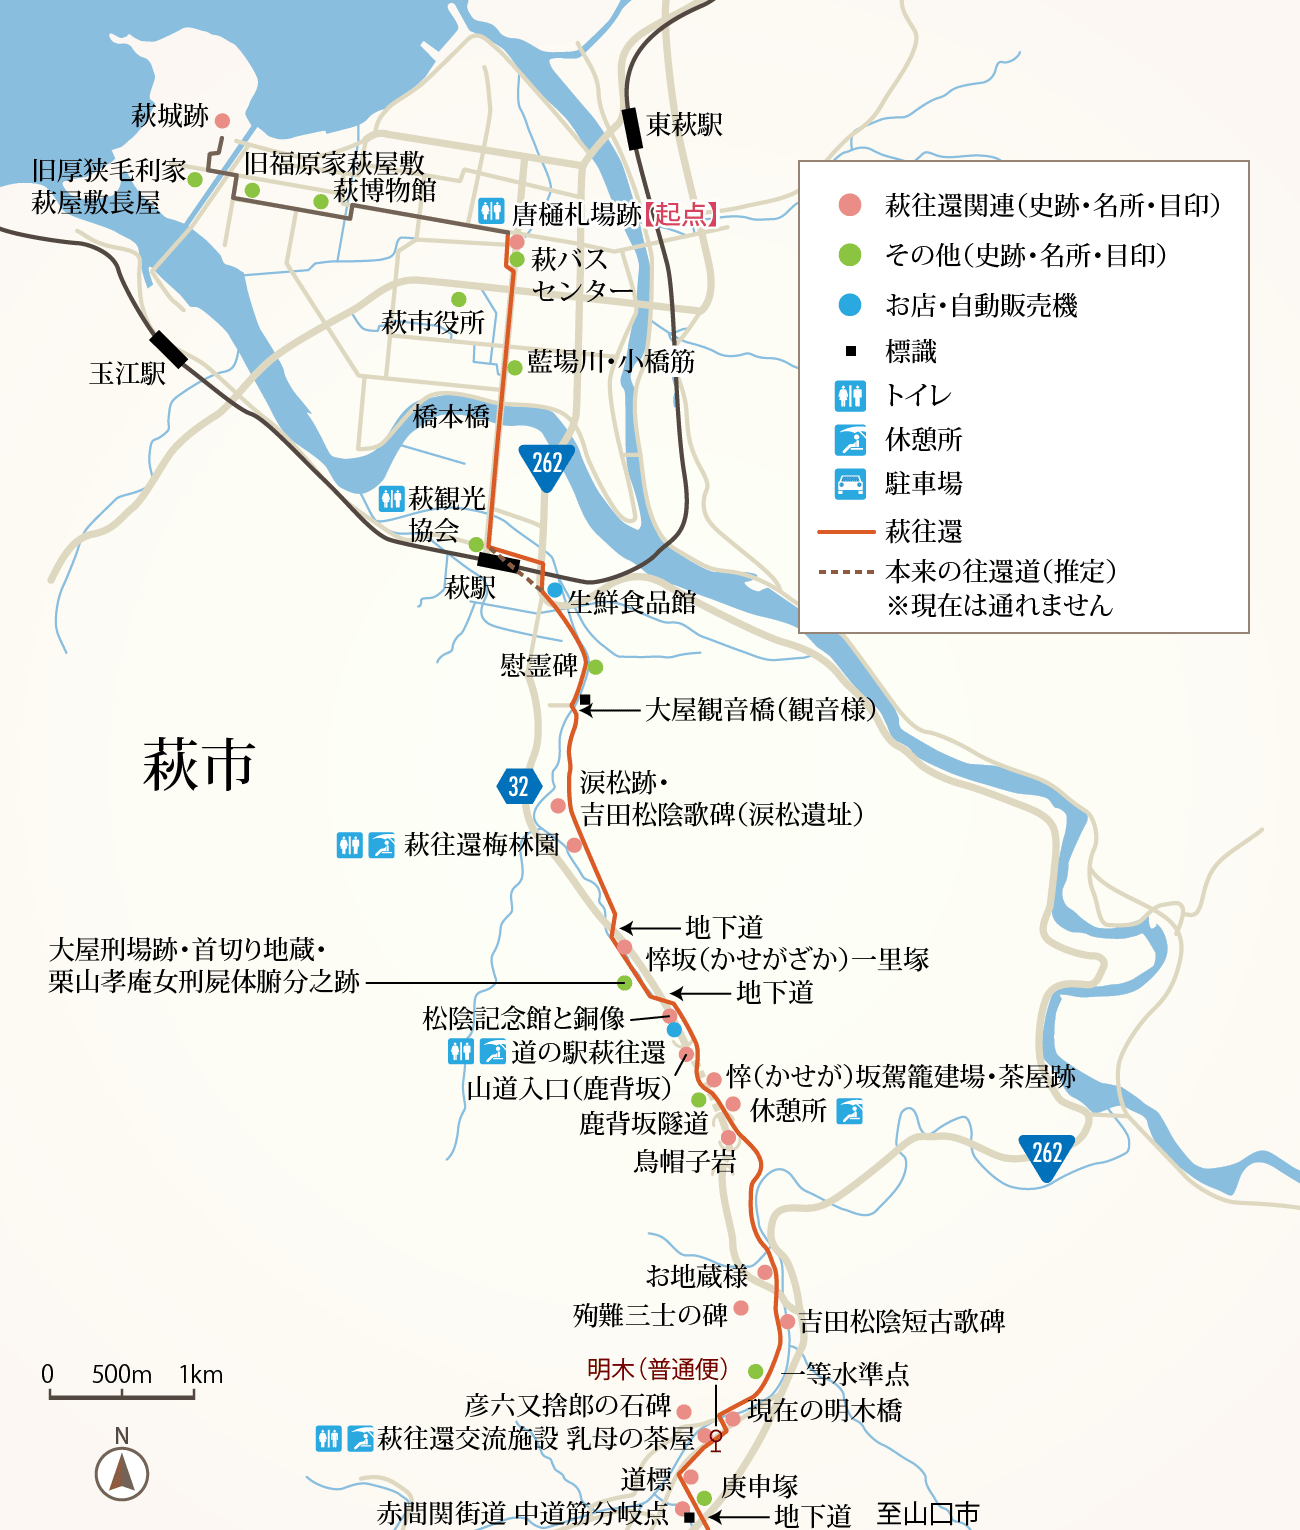 Route.01 萩〜唐樋札場跡〜明木市（萩市）ルートマップ